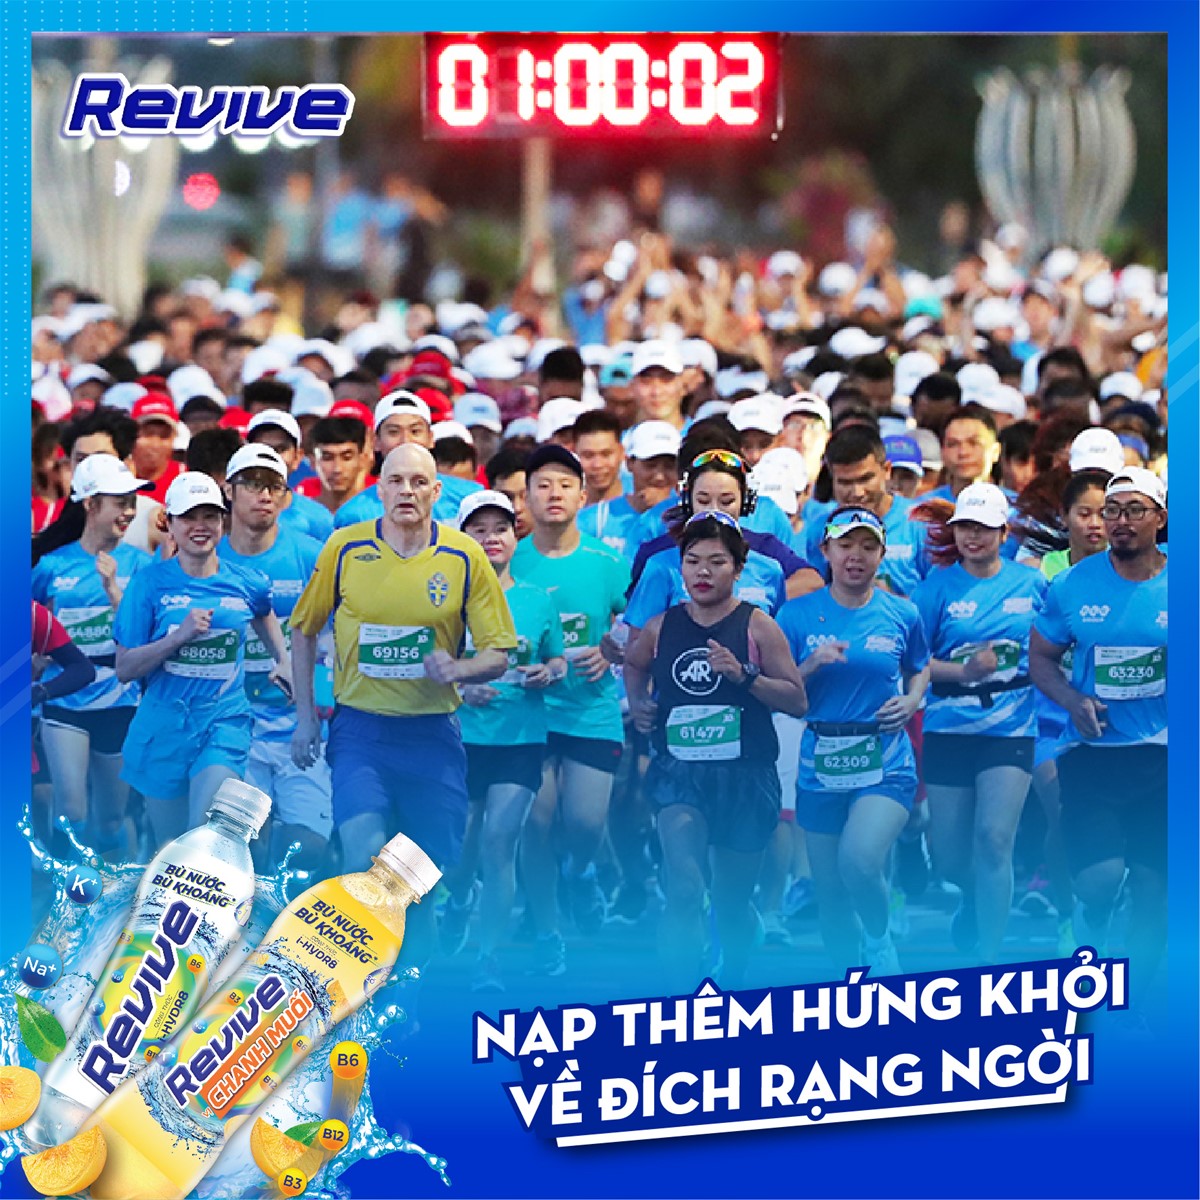 Nước Uống Điện Giải Revive Đồng Hành Cùng Halong Bay Heritage Marathon 2020